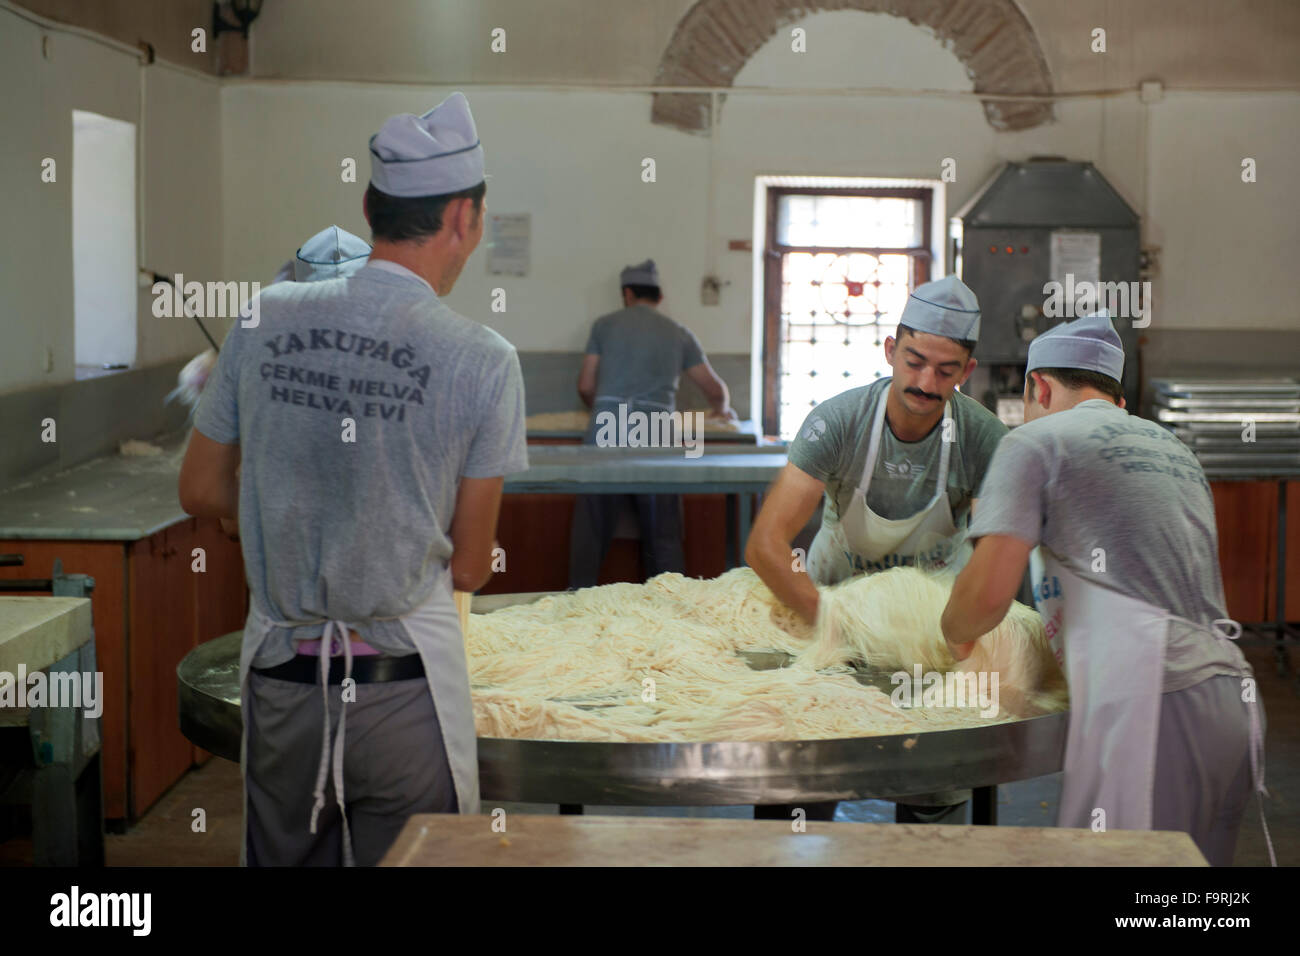 Türkei, westliche Schwarzmeerküste, Kastamonu, Cekme Helva Herstellung in einem Nebengebäude der Jakup Aga Moschee. Stock Photo